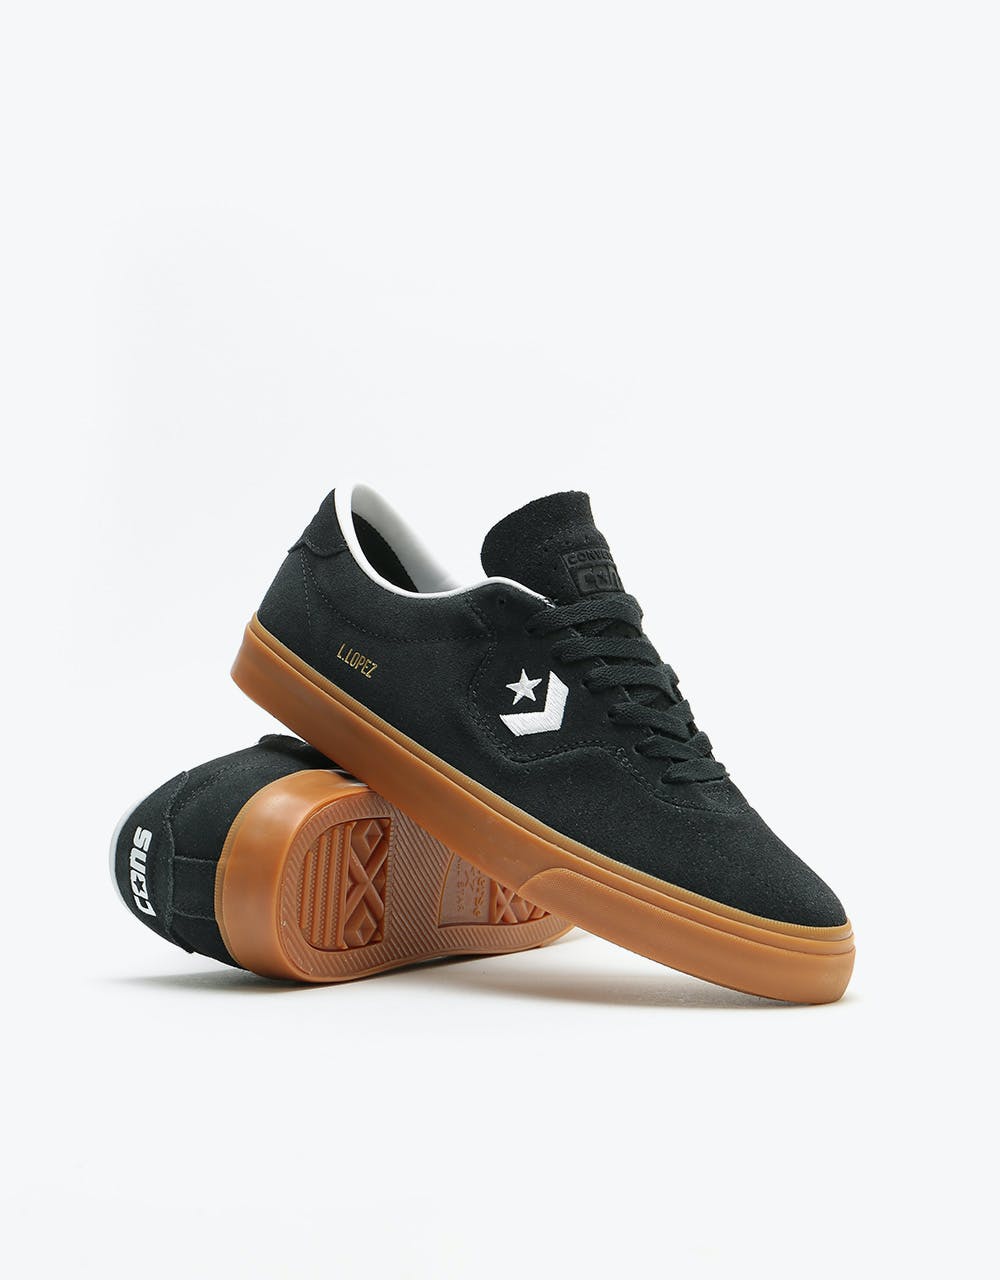 Converse Louie Lopez Pro Ox Skate Shoes - Black/White/Gum